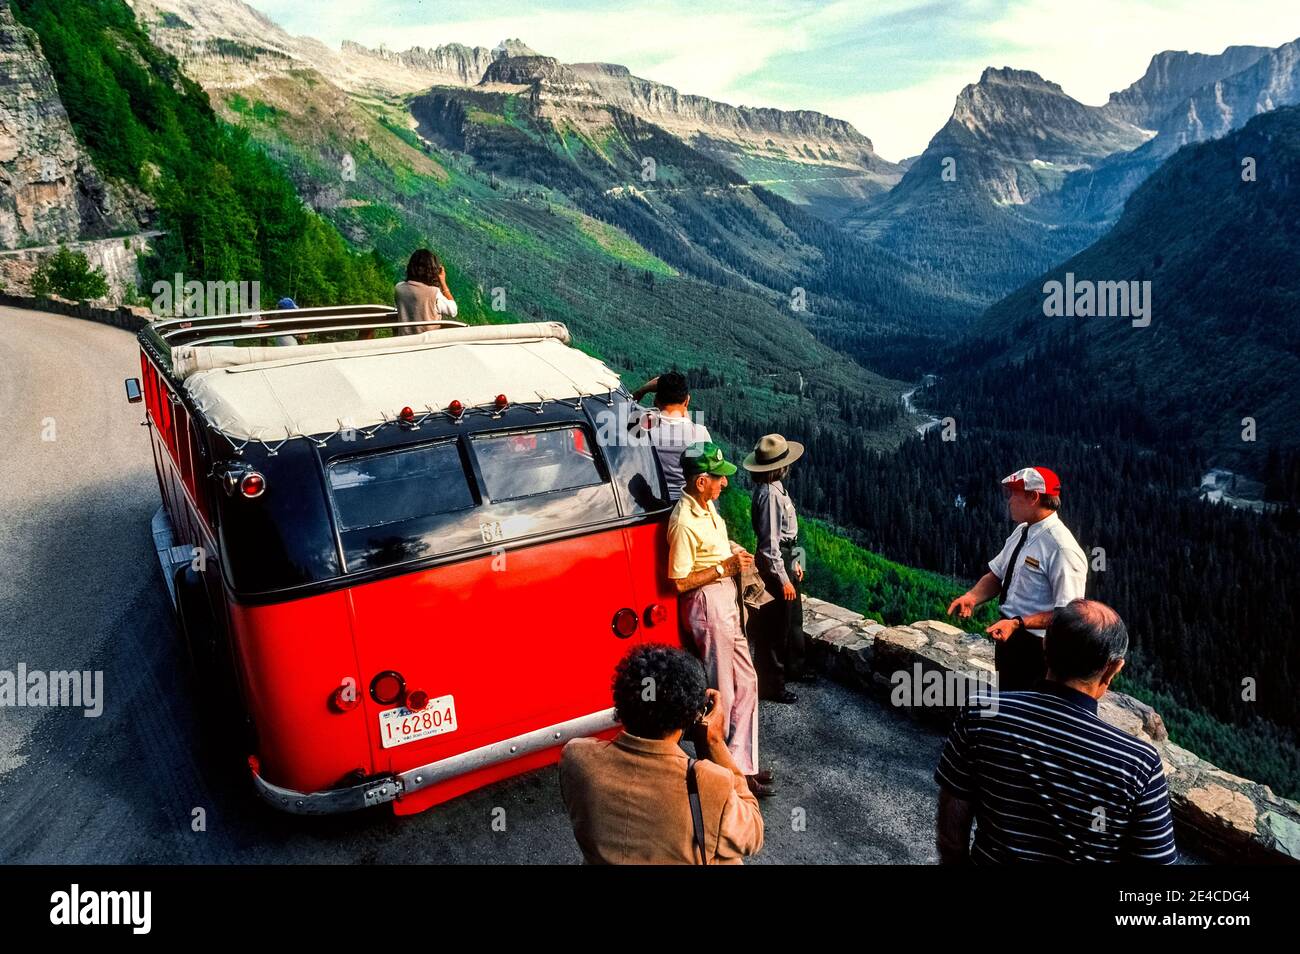 Este autobús turístico rojo de los años 30 ofrece un techo de lona que se abre para proporcionar vistas panorámicas de impresionantes picos de montaña para los turistas en excursiones escénicas a lo largo de la carretera Going-to-the-Sun en el Parque Nacional Glacier en el noroeste de Montana, EE.UU. El vehículo de 17 pasajeros se encuentra entre la flota del parque de 33 autobuses idénticos que se conocen como Red Jammers porque sus conductores "atascan" las marchas al cambiar las transmisiones manuales en las empinadas carreteras montañosas. Todos esos modelos históricos de la White Motor Company N° 706 han sido restaurados a su aspecto original. Foto de stock